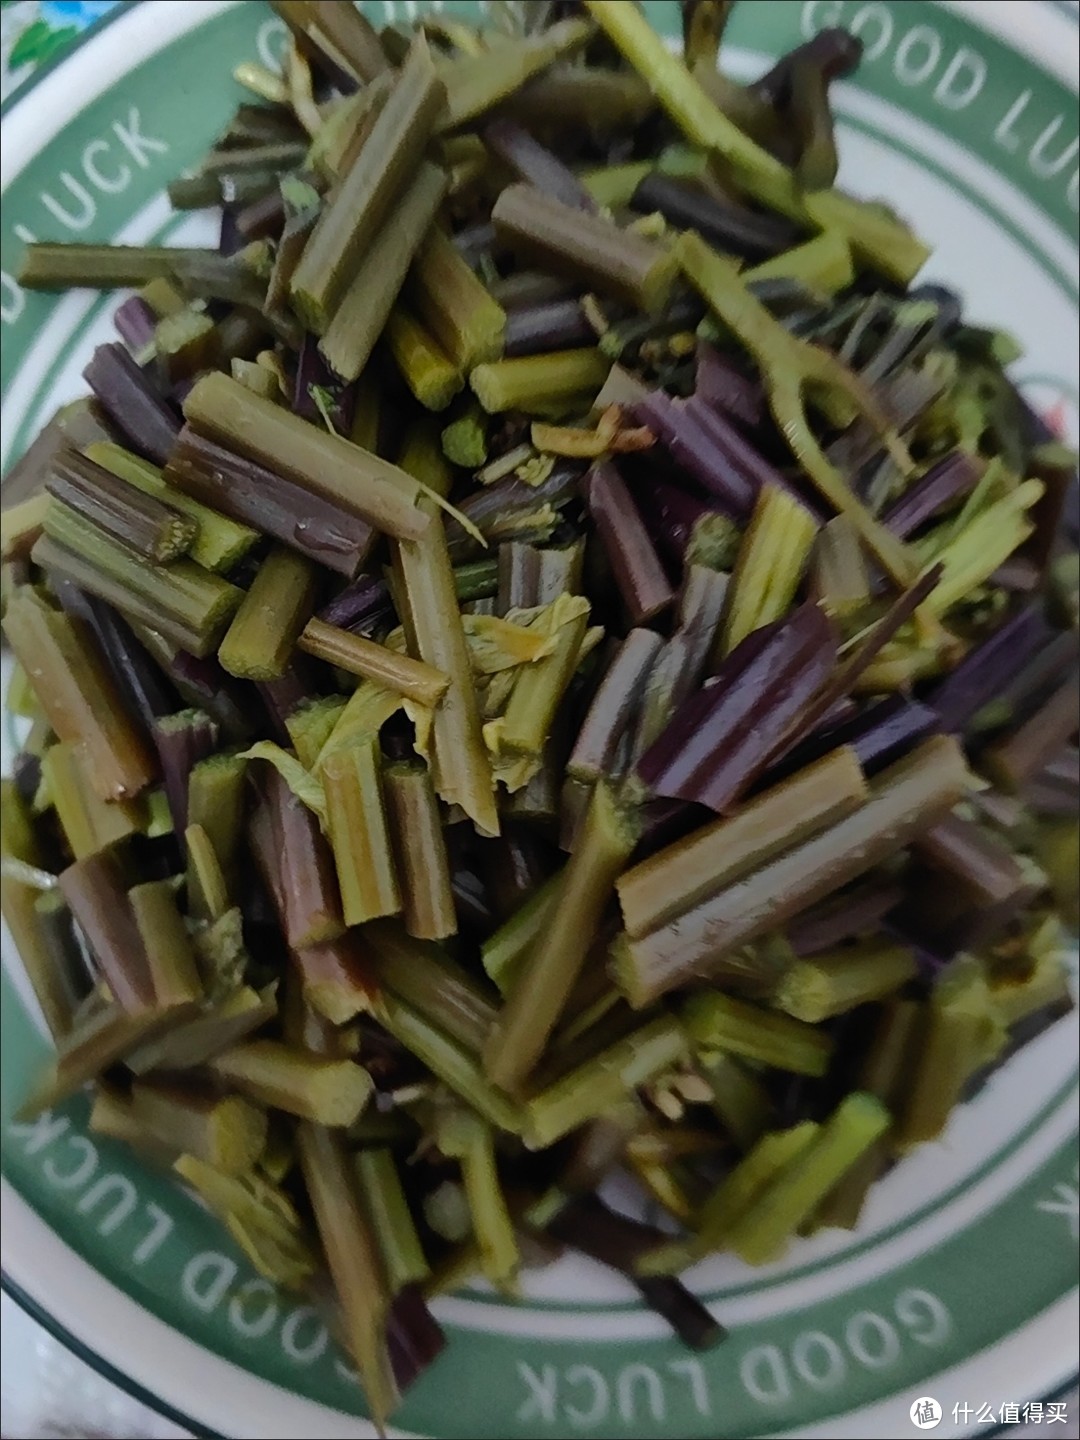 一年四季春先吃，野生蕨菜来自春天的美味